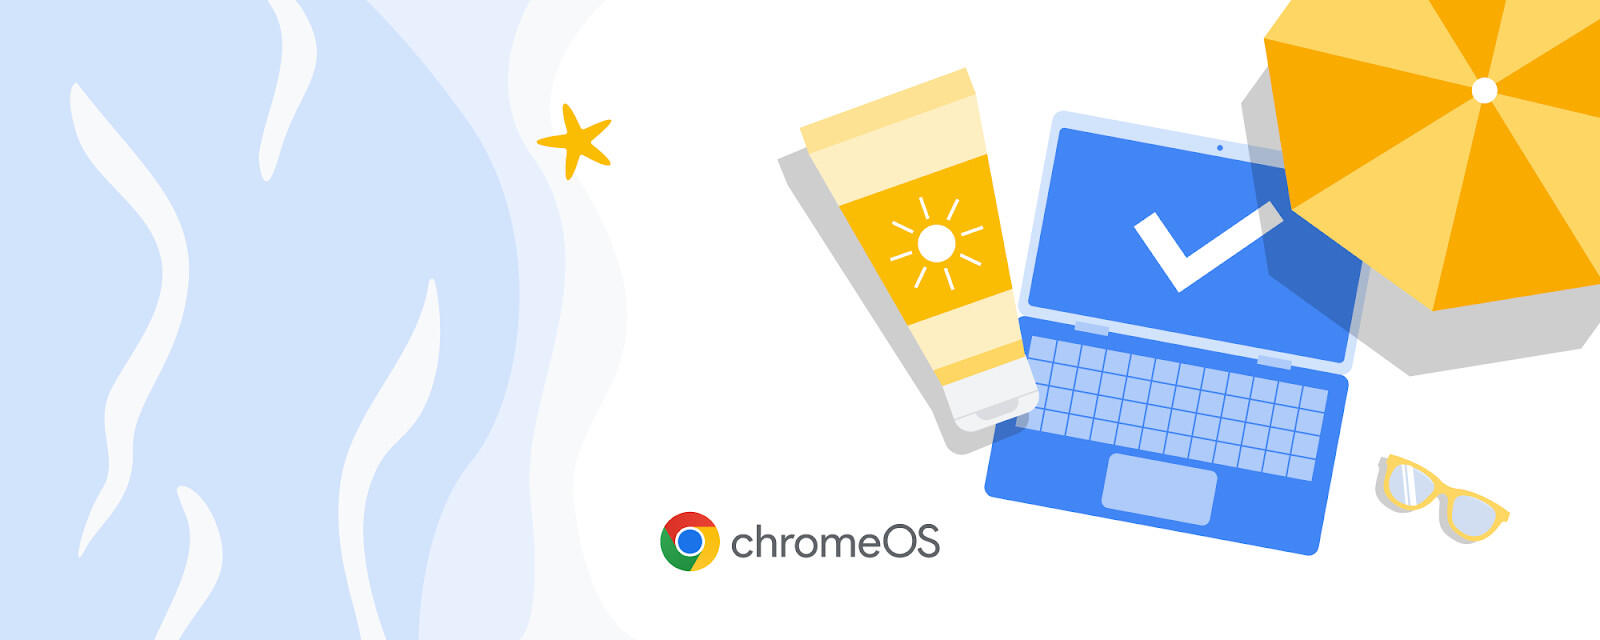 Google ChromeOS Flex : un nouveau souffle pour les ordinateurs portables d'entreprise